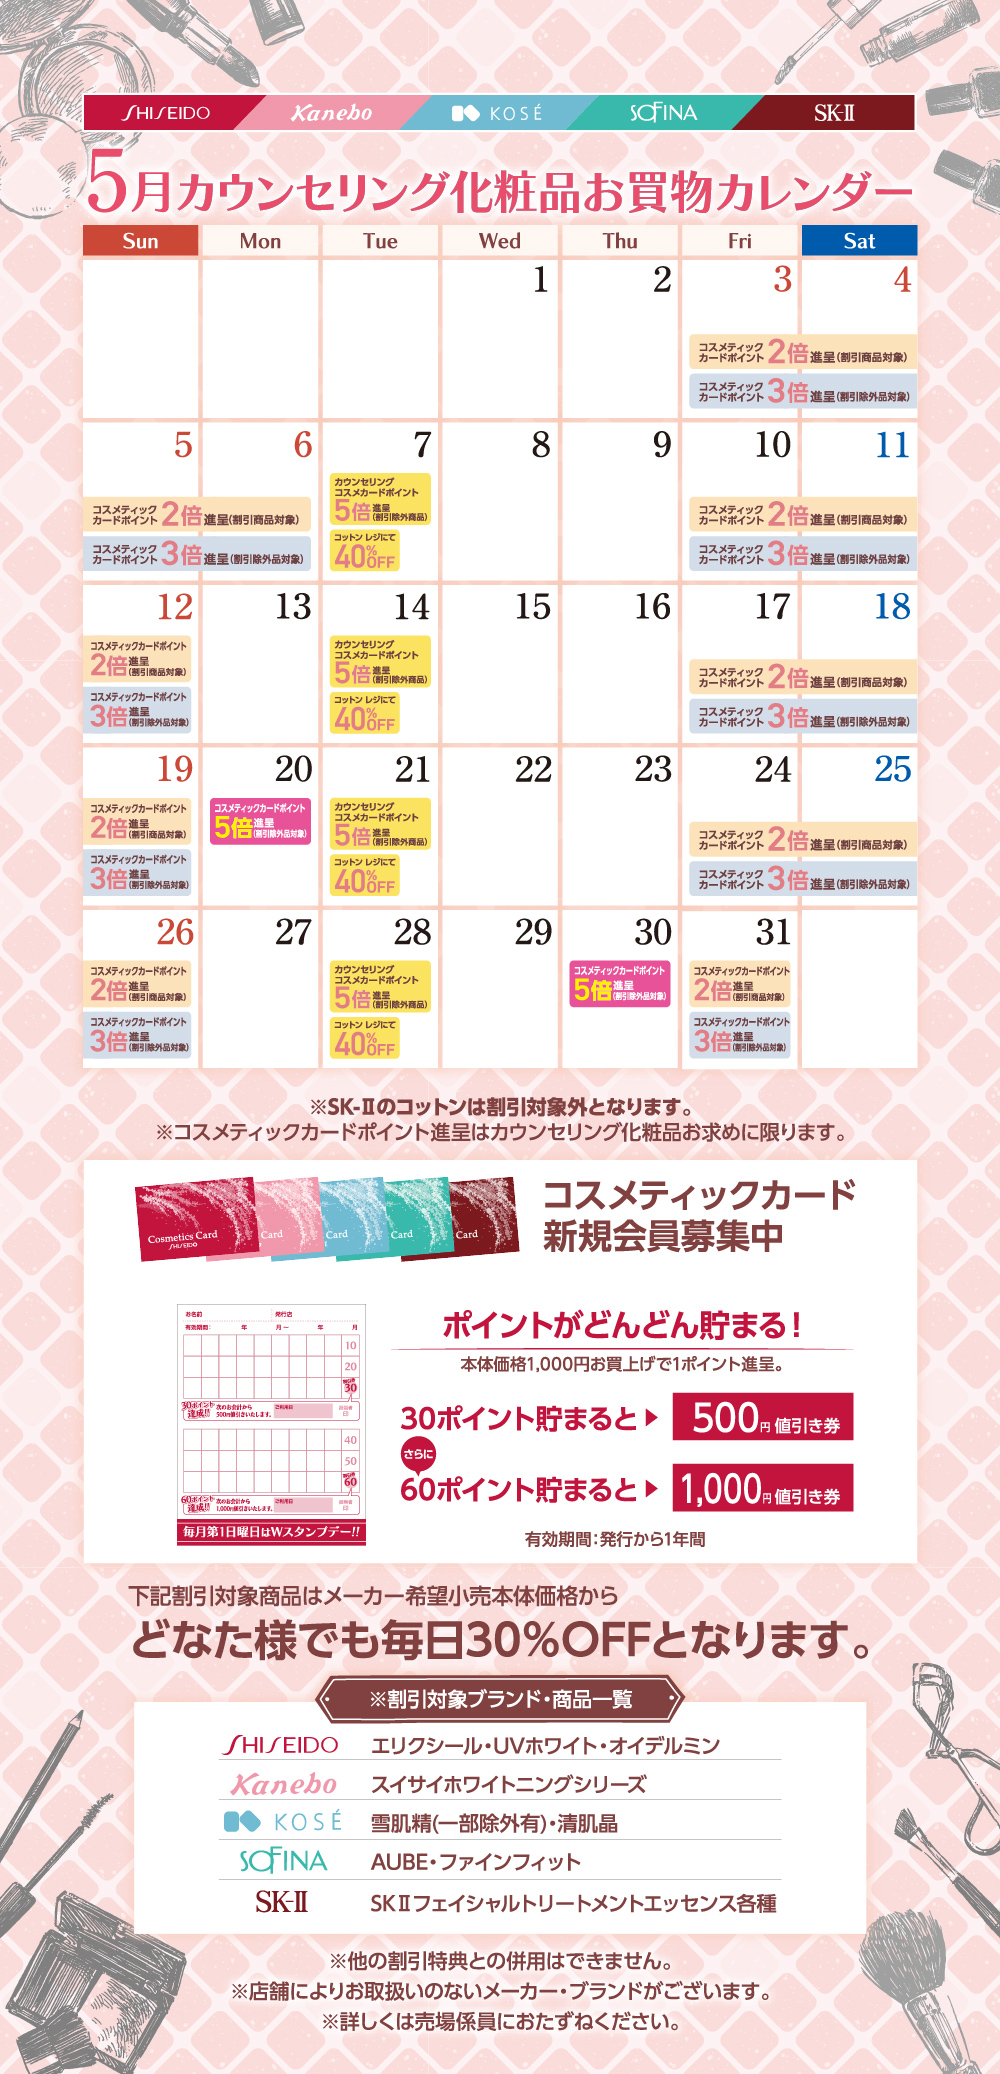 カウンセリング化粧品 5月お買物カレンダー